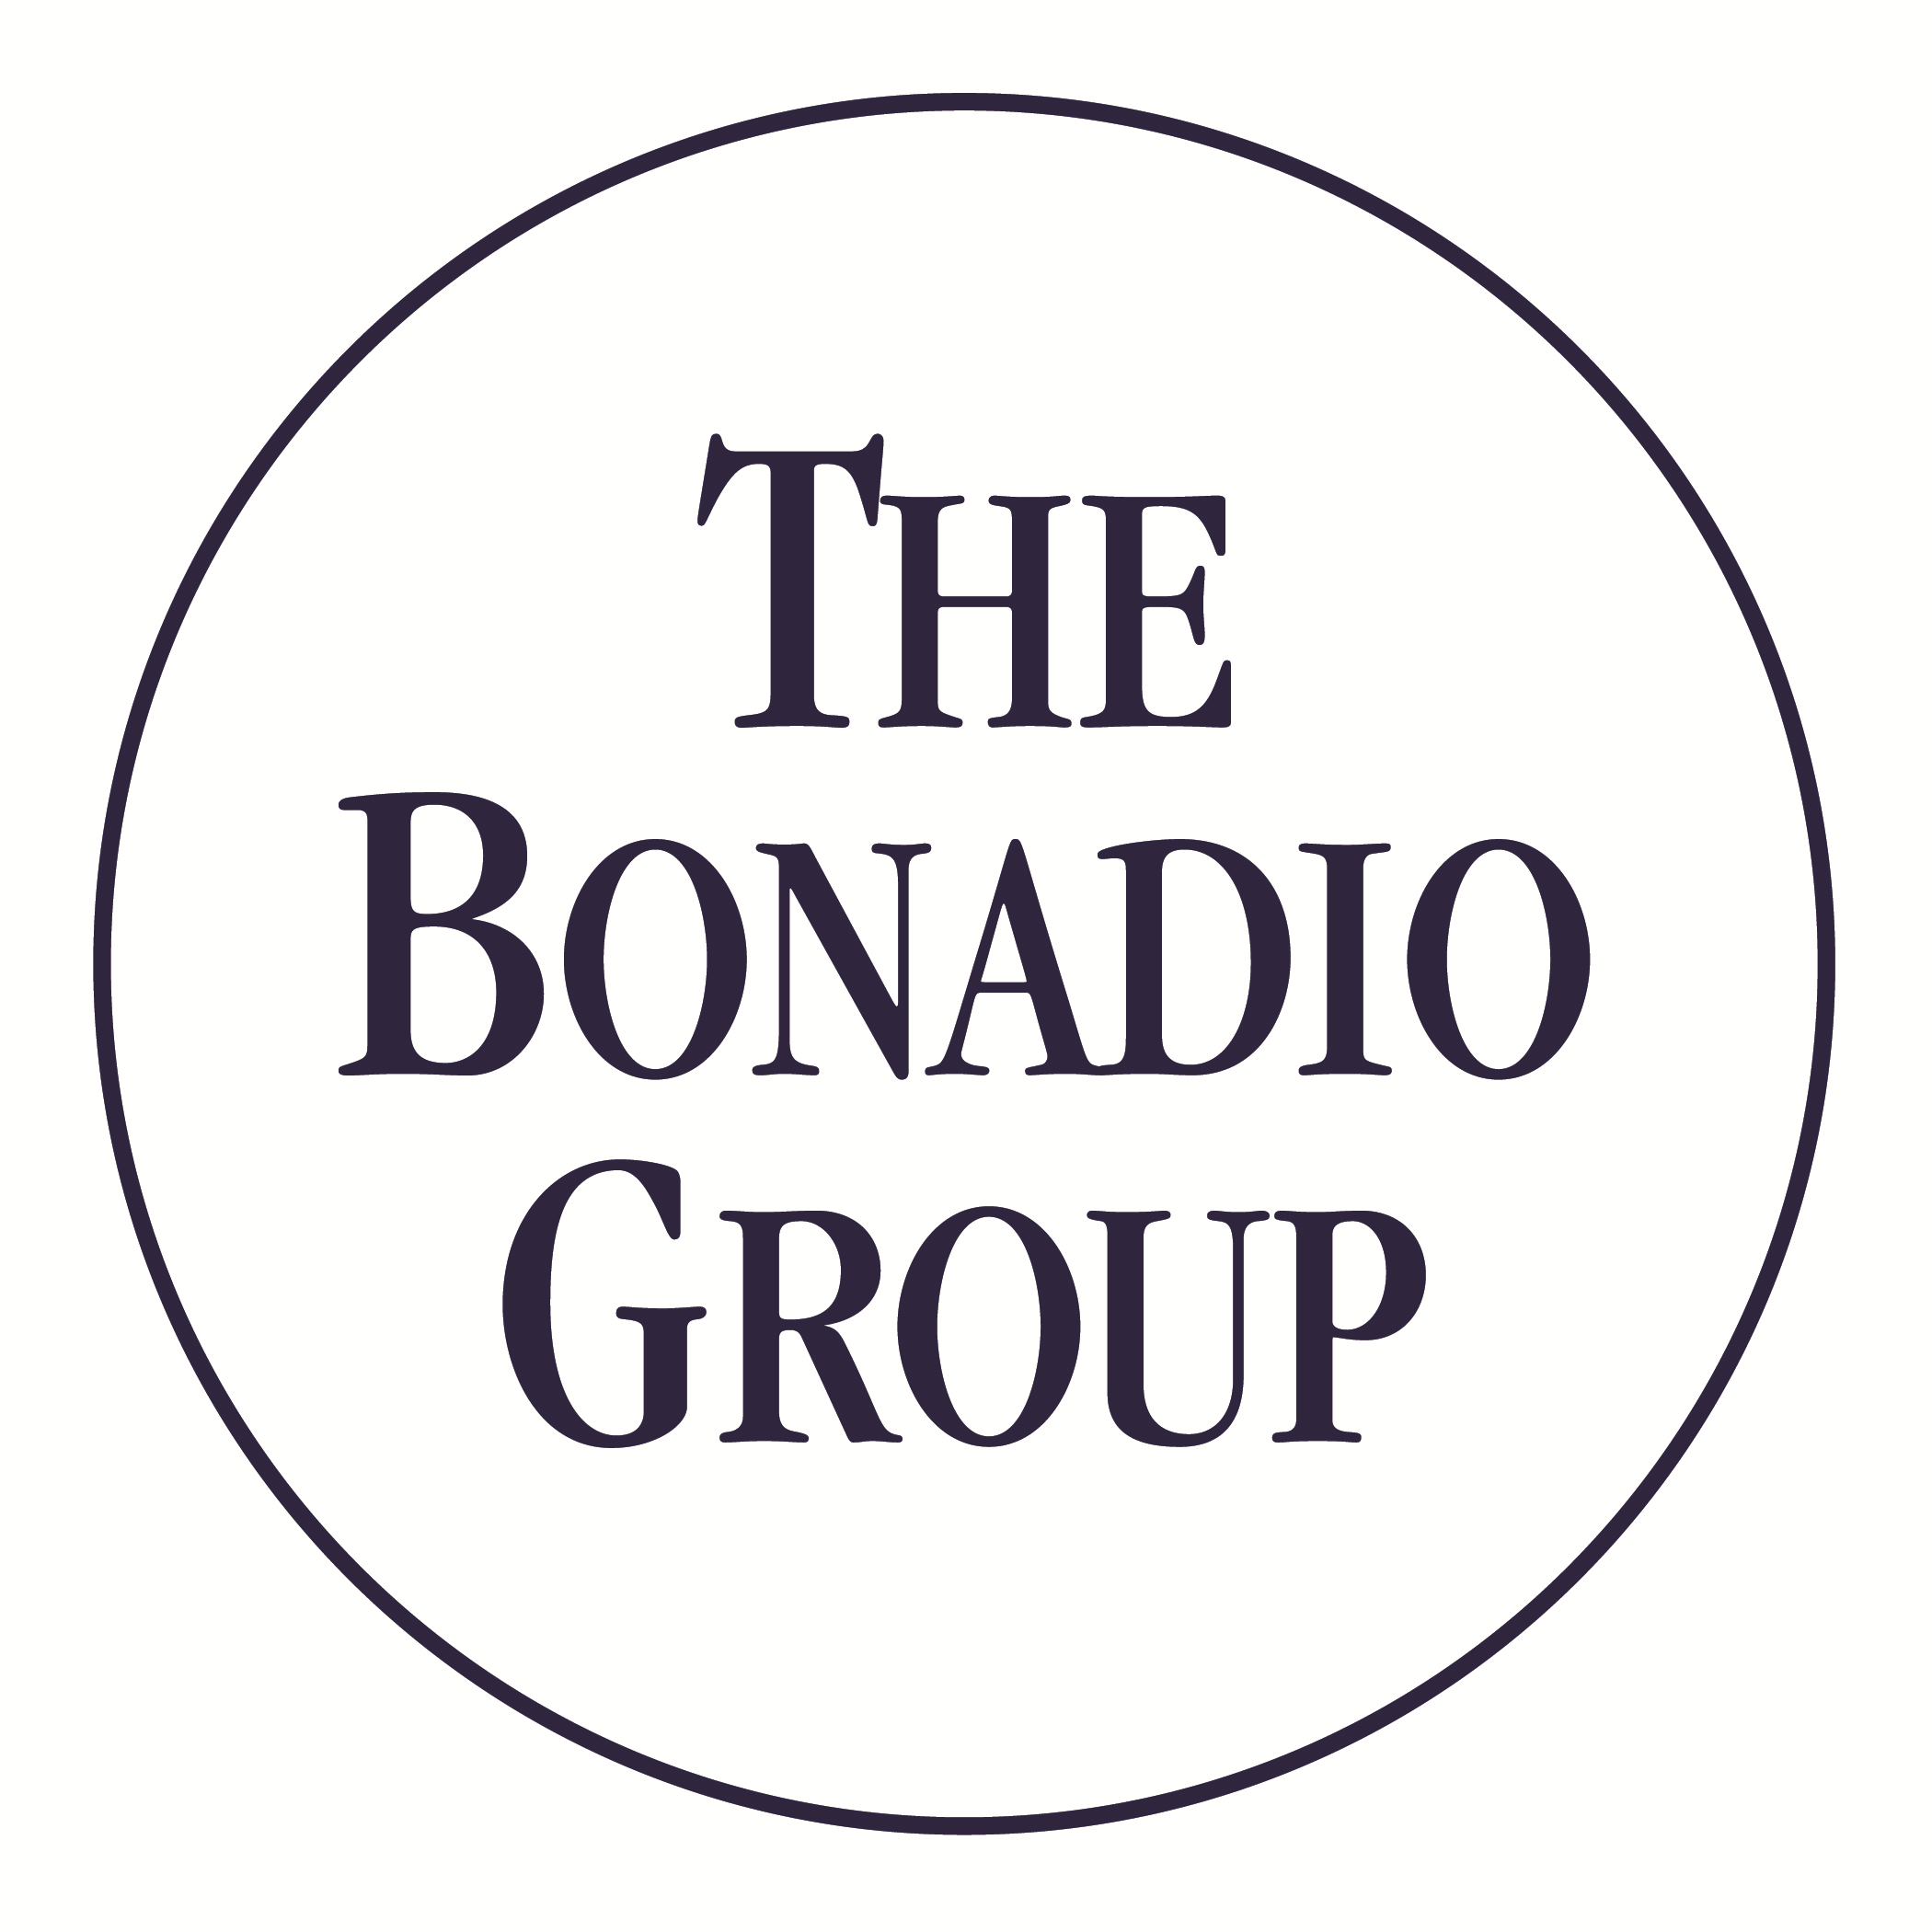 The Bonadio Group logo